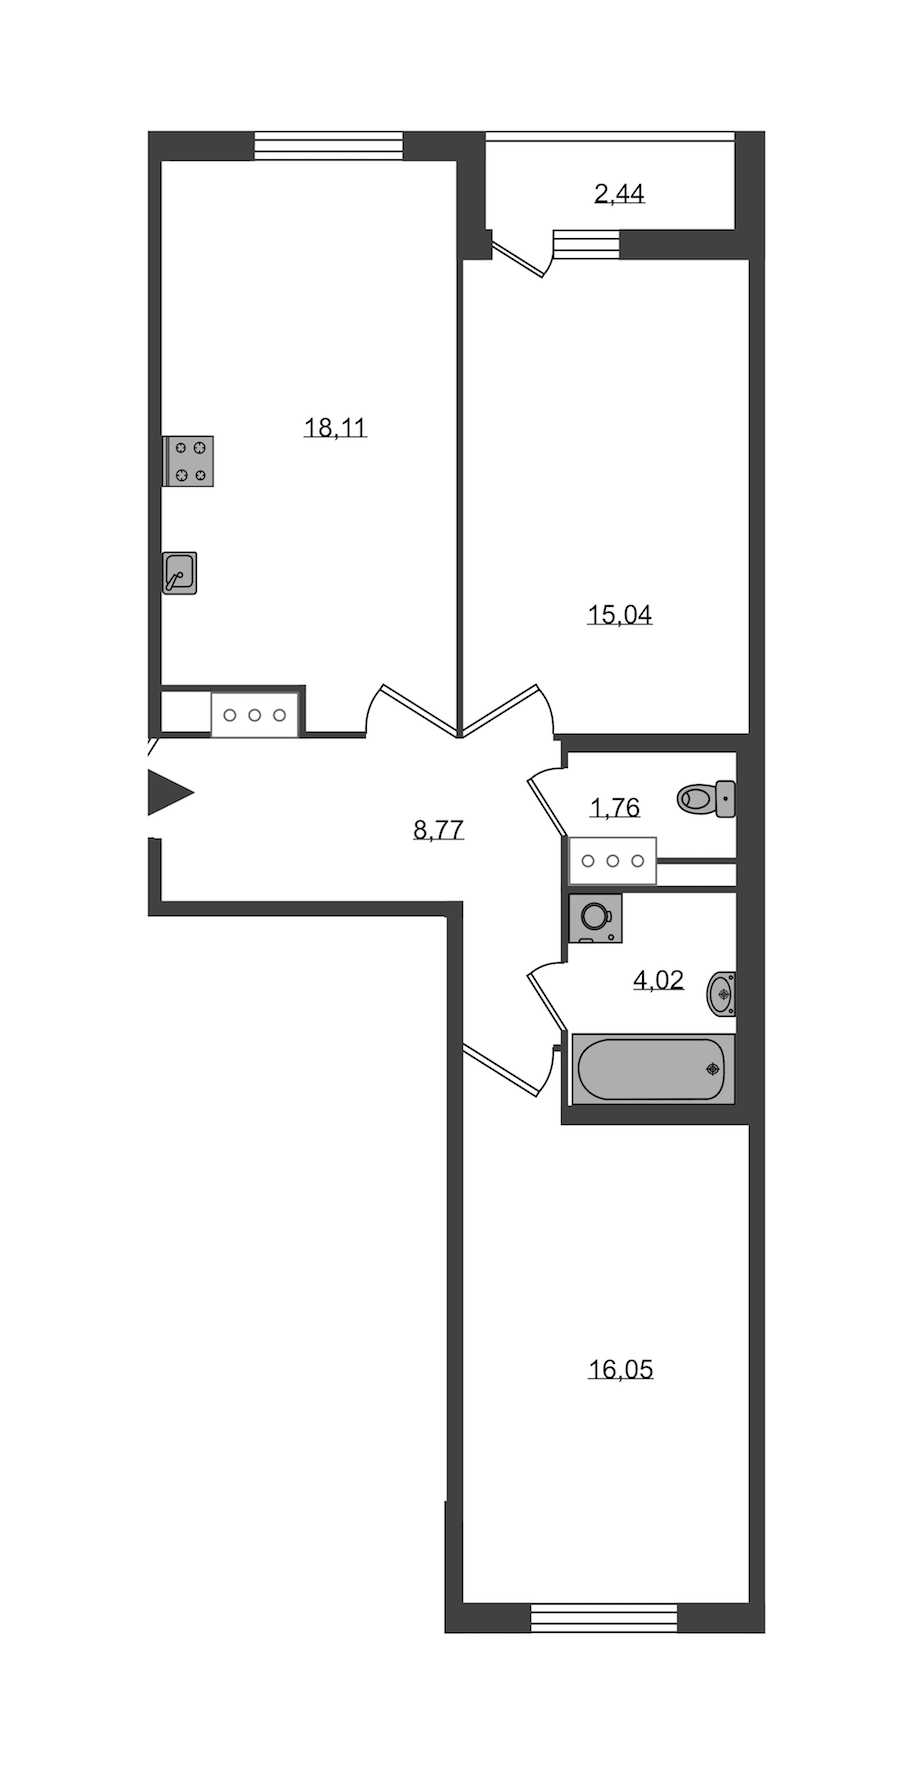 Двухкомнатная квартира в KVS: площадь 63.75 м2 , этаж: 6 – купить в Санкт-Петербурге